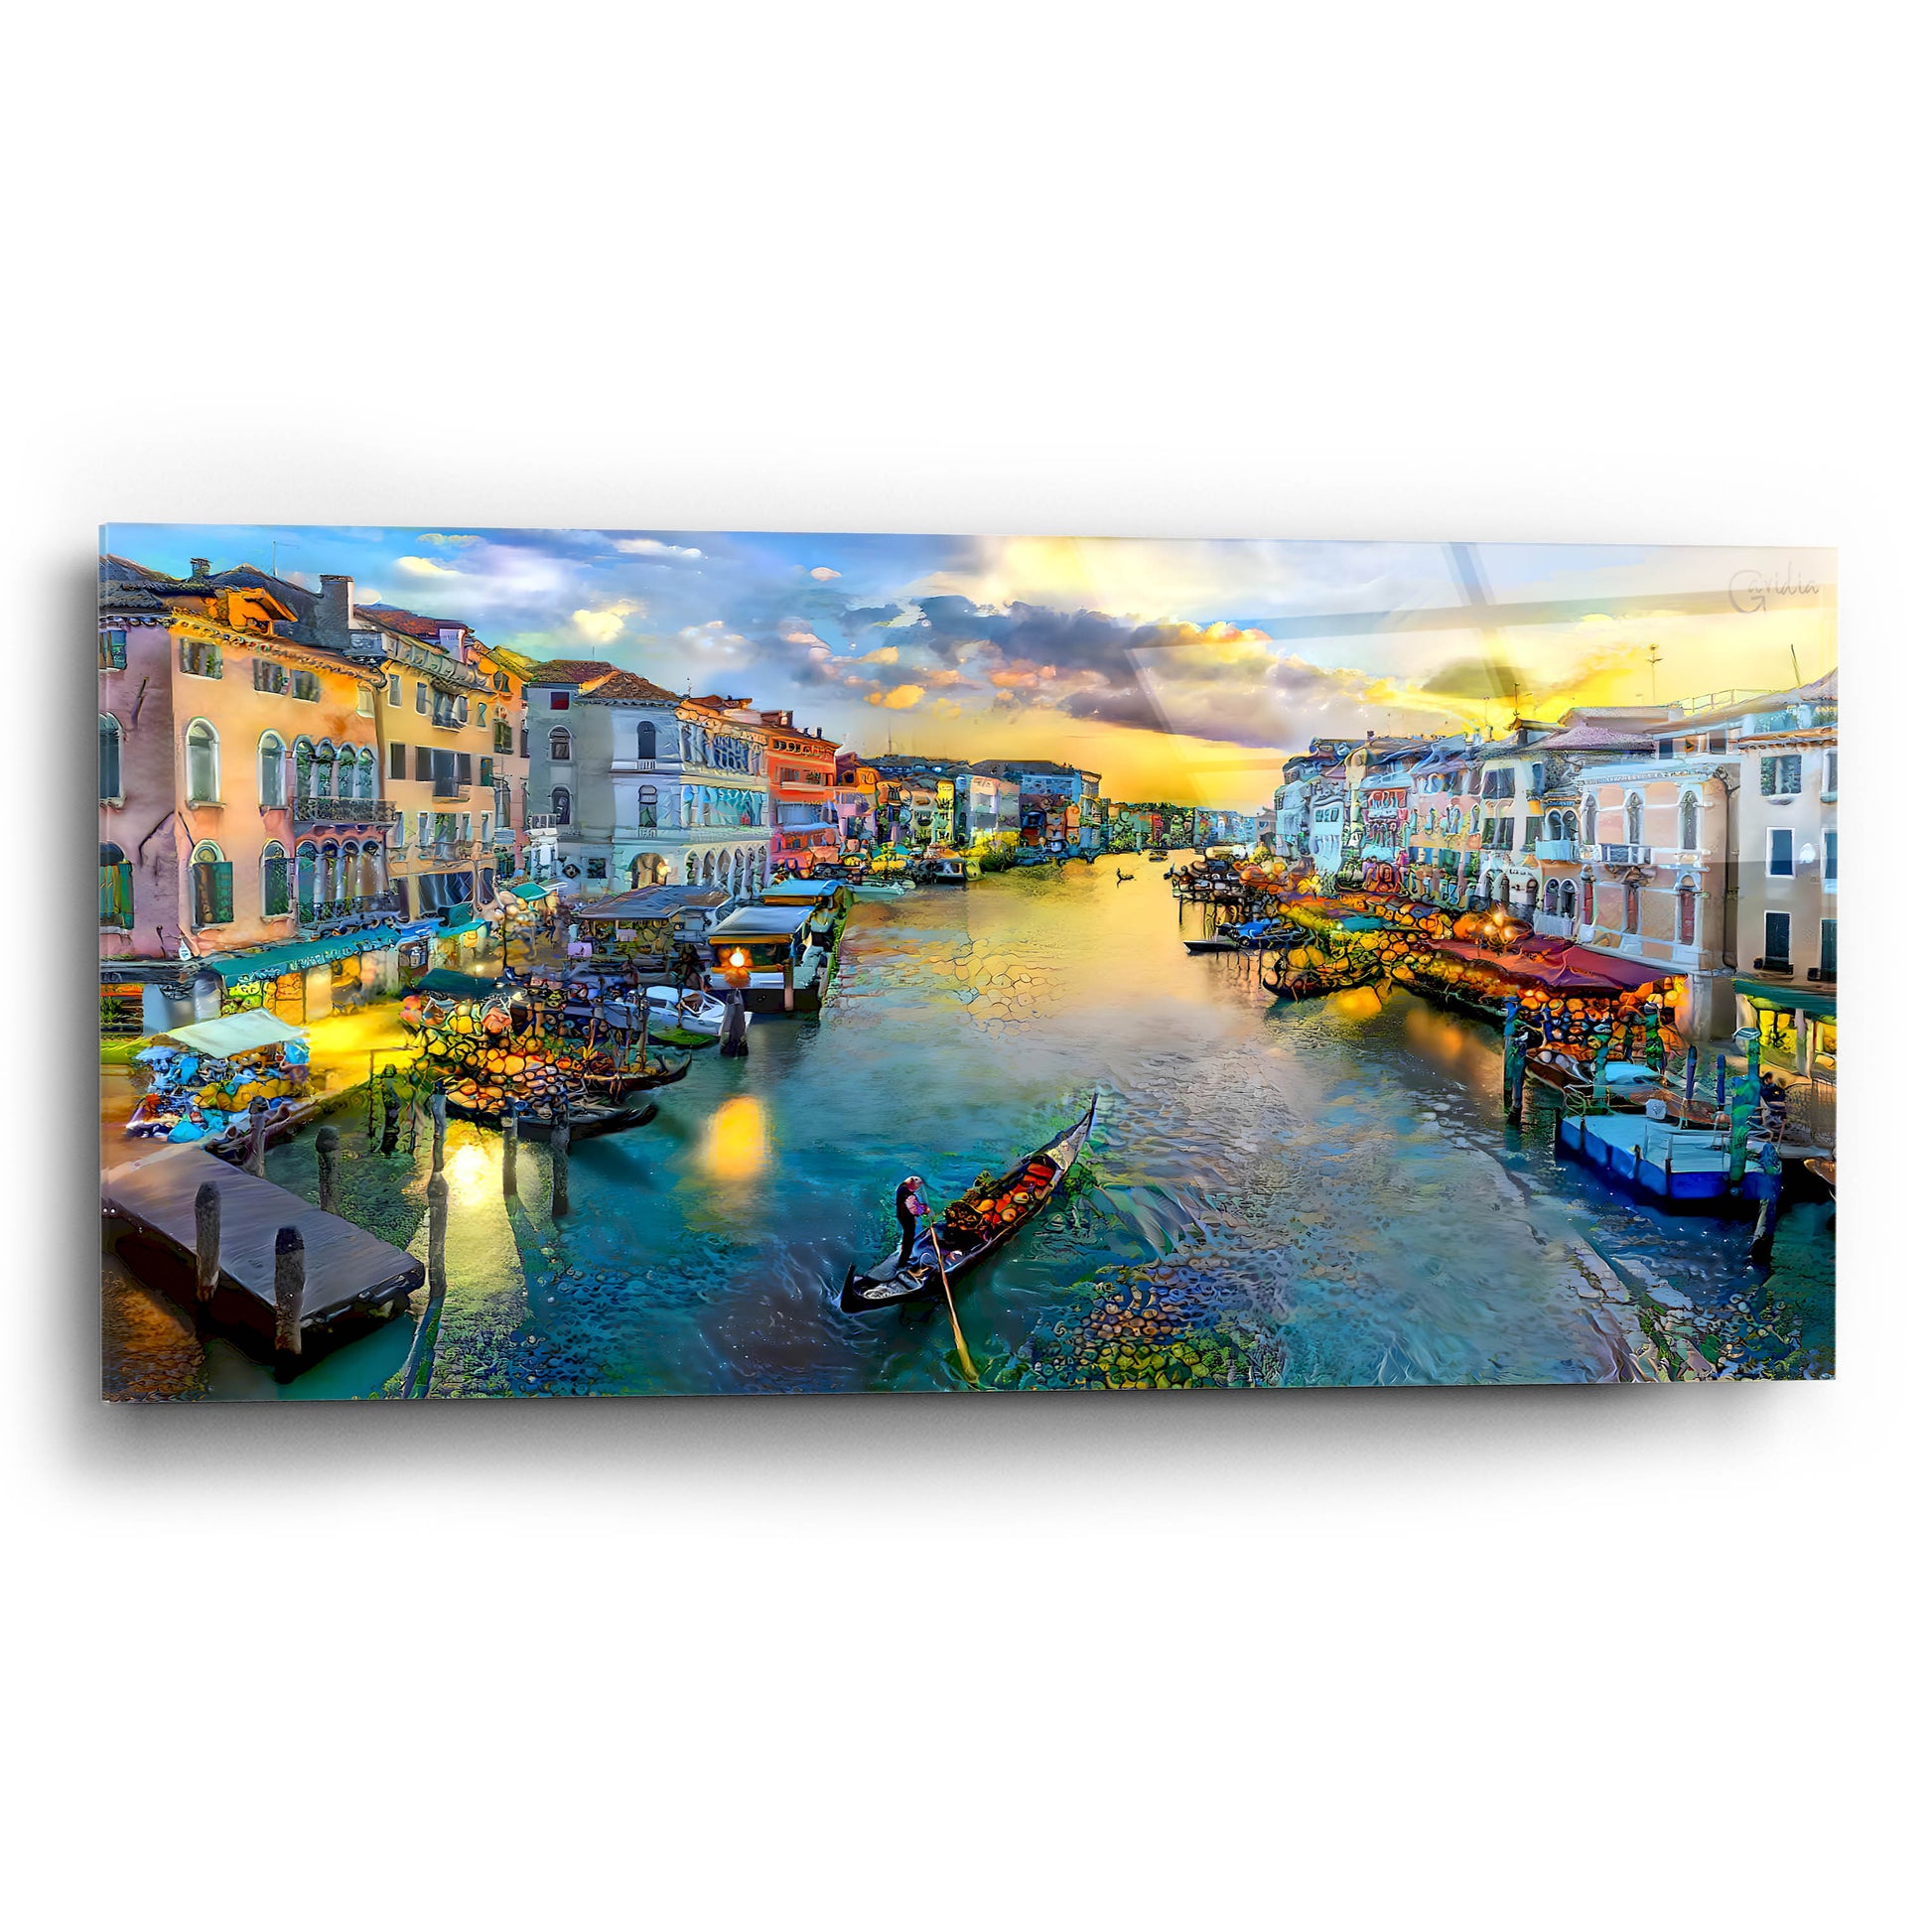 Epic Art 'Venice Italy Grand Canal' by Pedro Gavidia, Acrylic Glass Wall Art,24x12